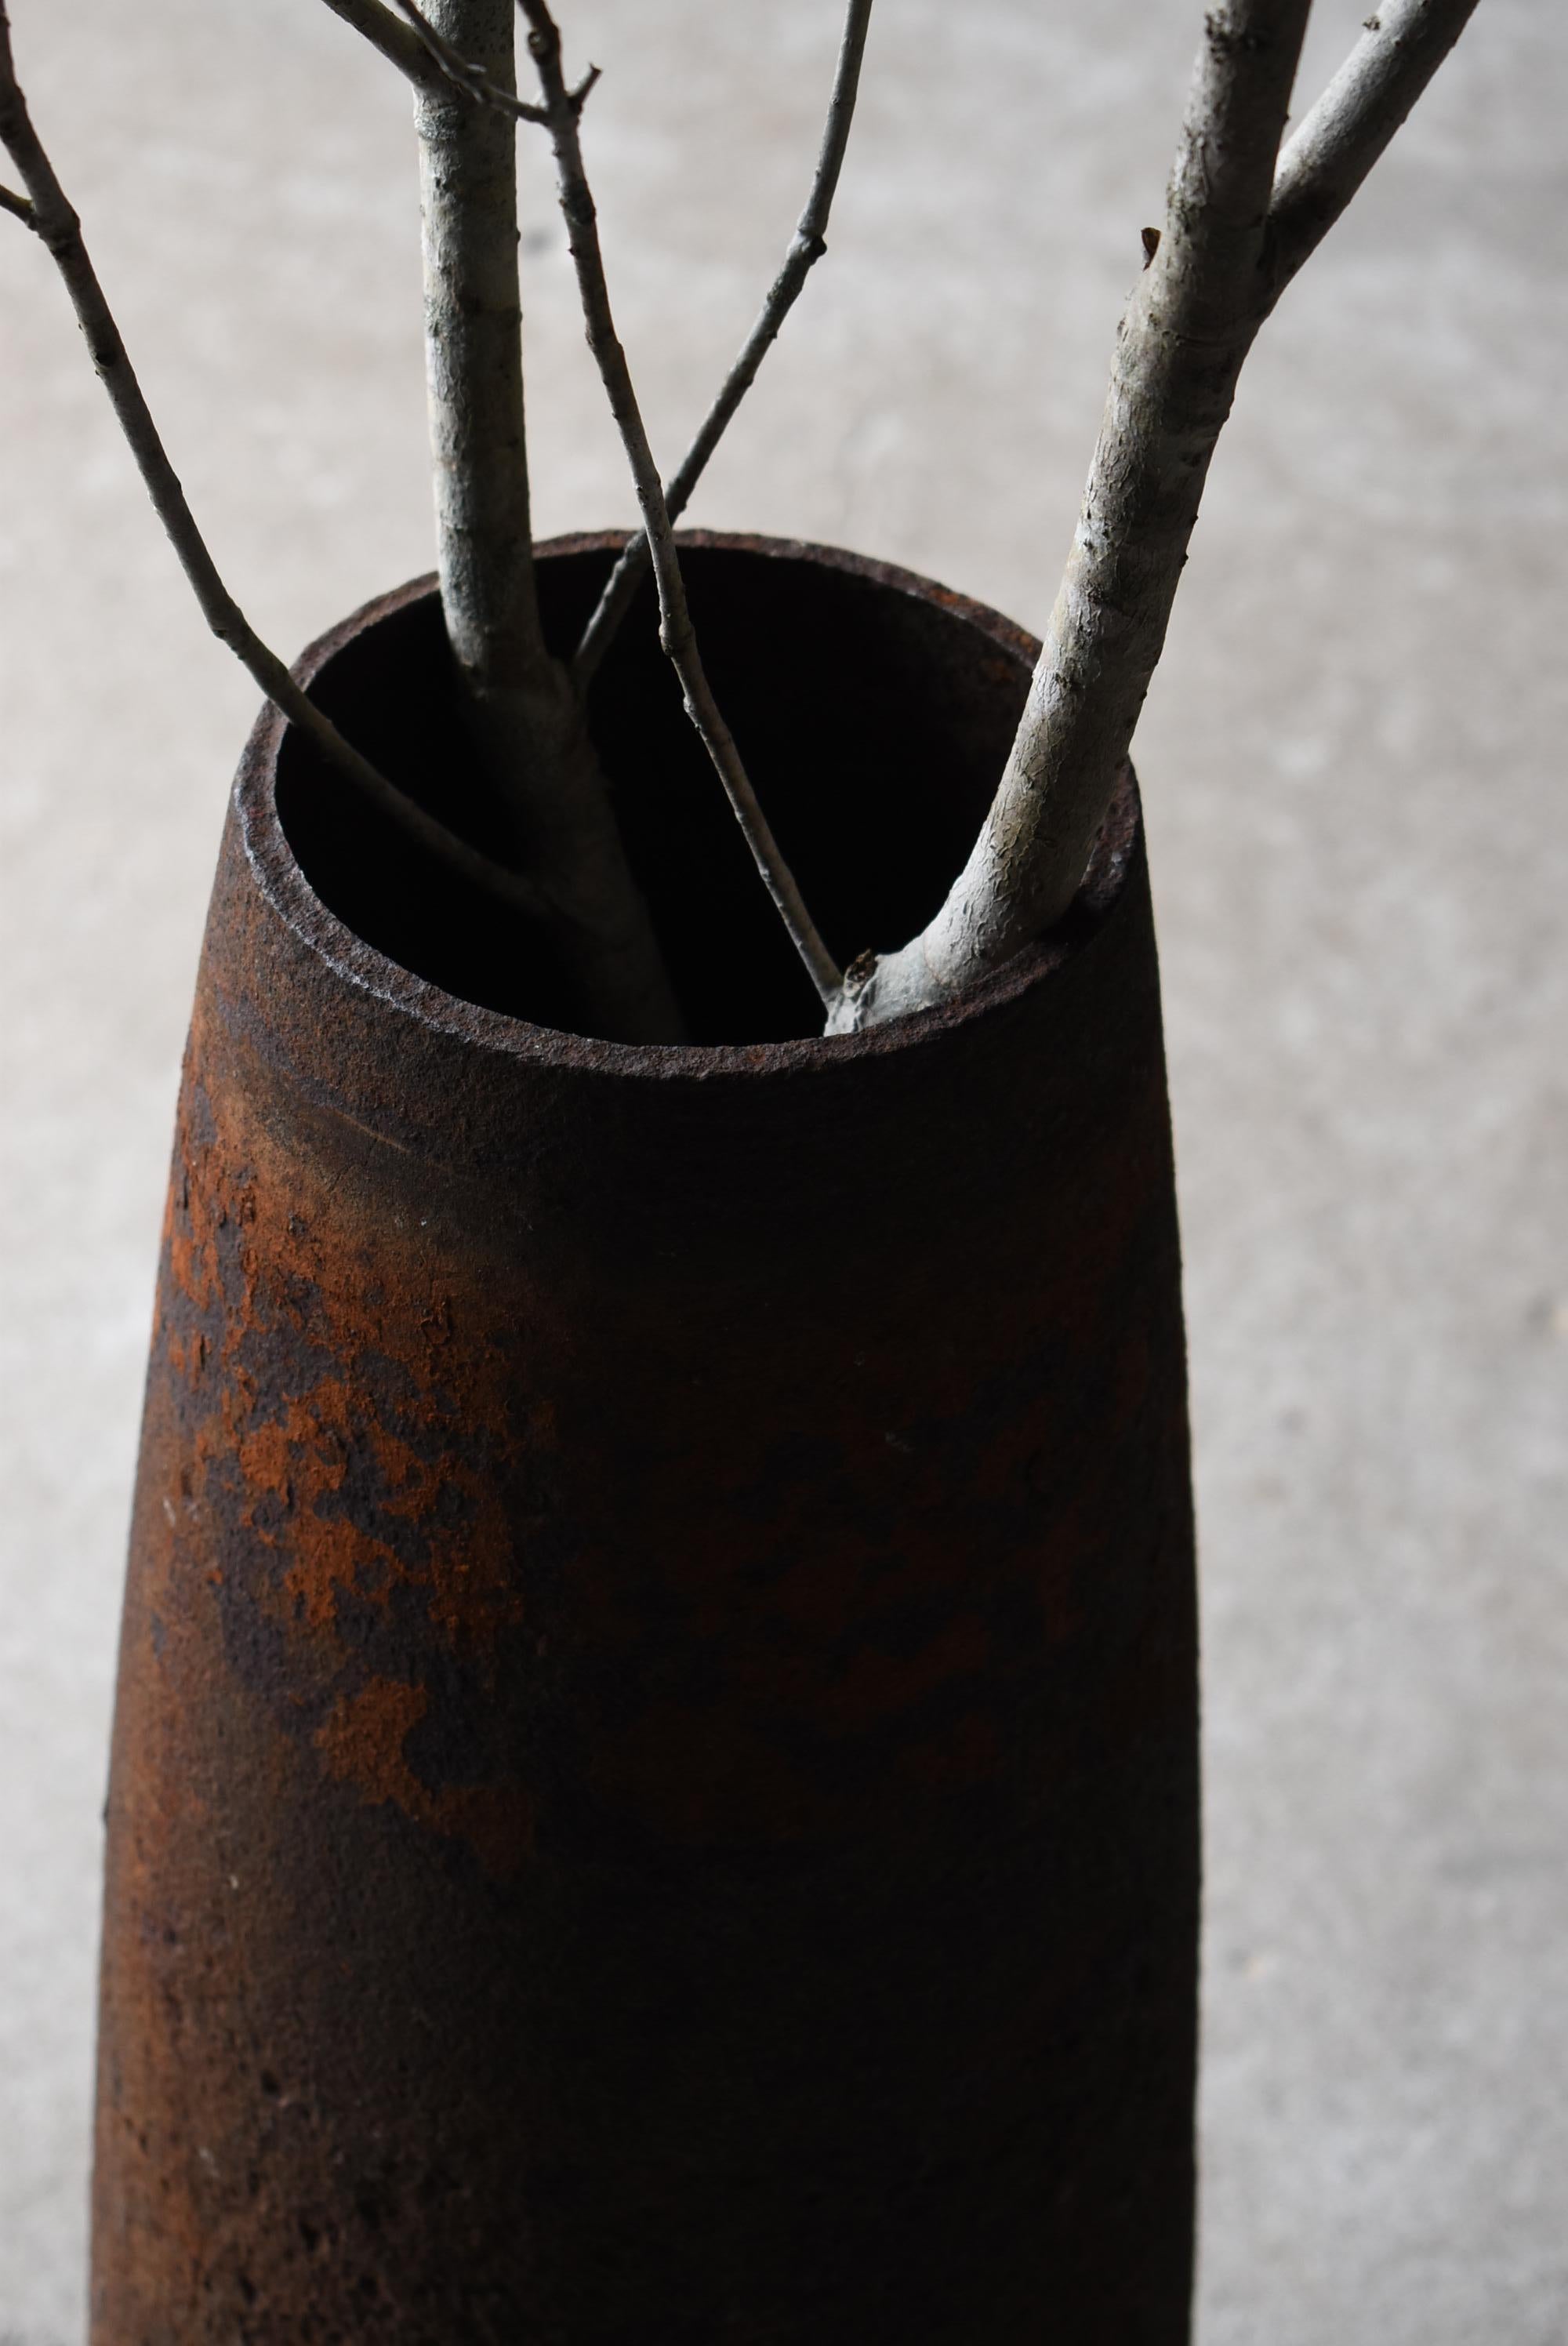 Showa Antique Iron Shell 1920s-1940s / Flower Vase Object Wabisabi